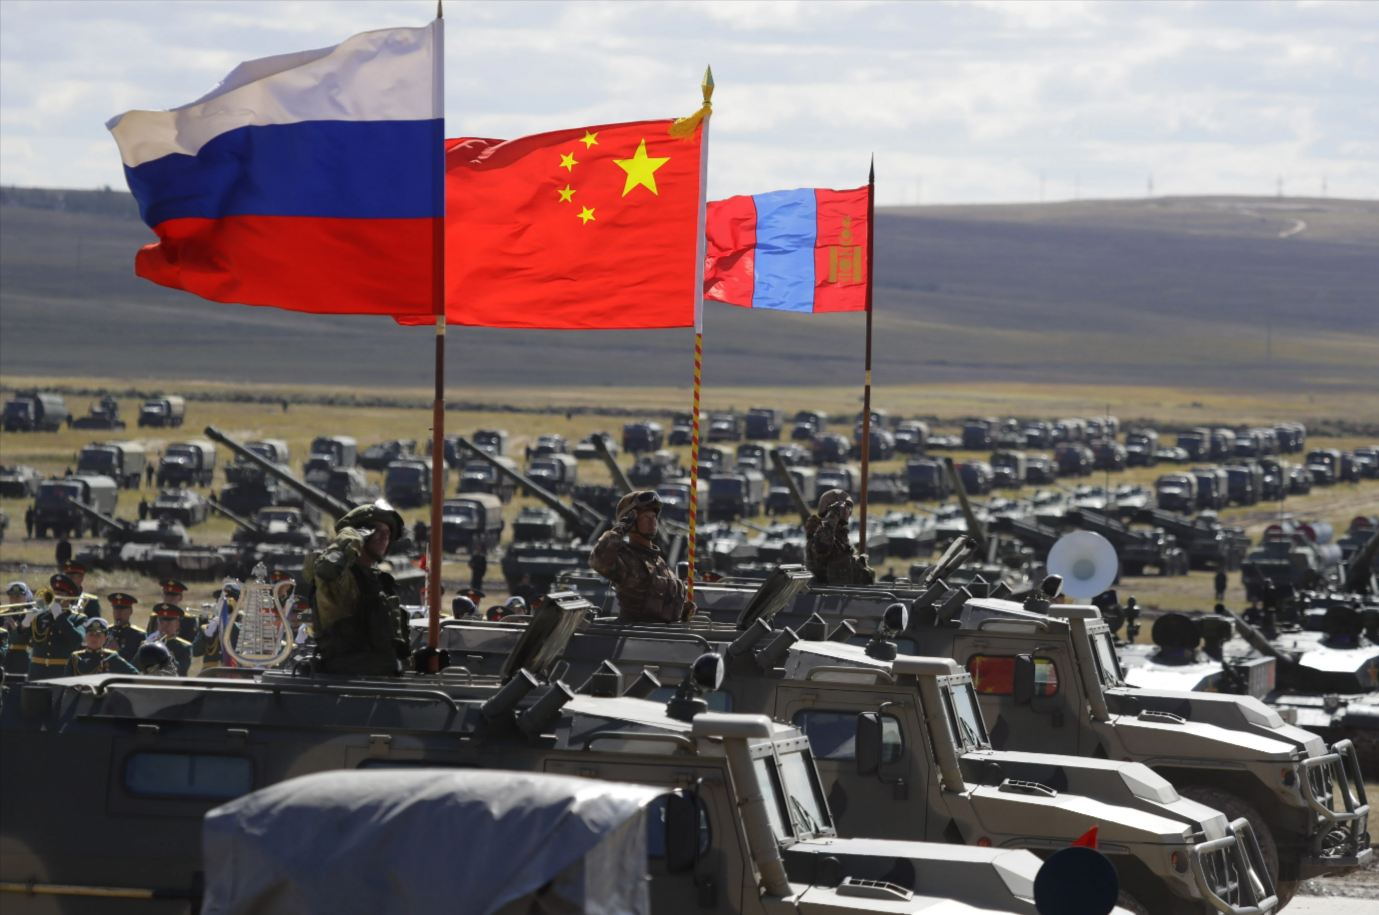 Endlich Frieden? China will Sonderbeauftragten zu Gesprächen nach Russland und in die Ukraine entsenden